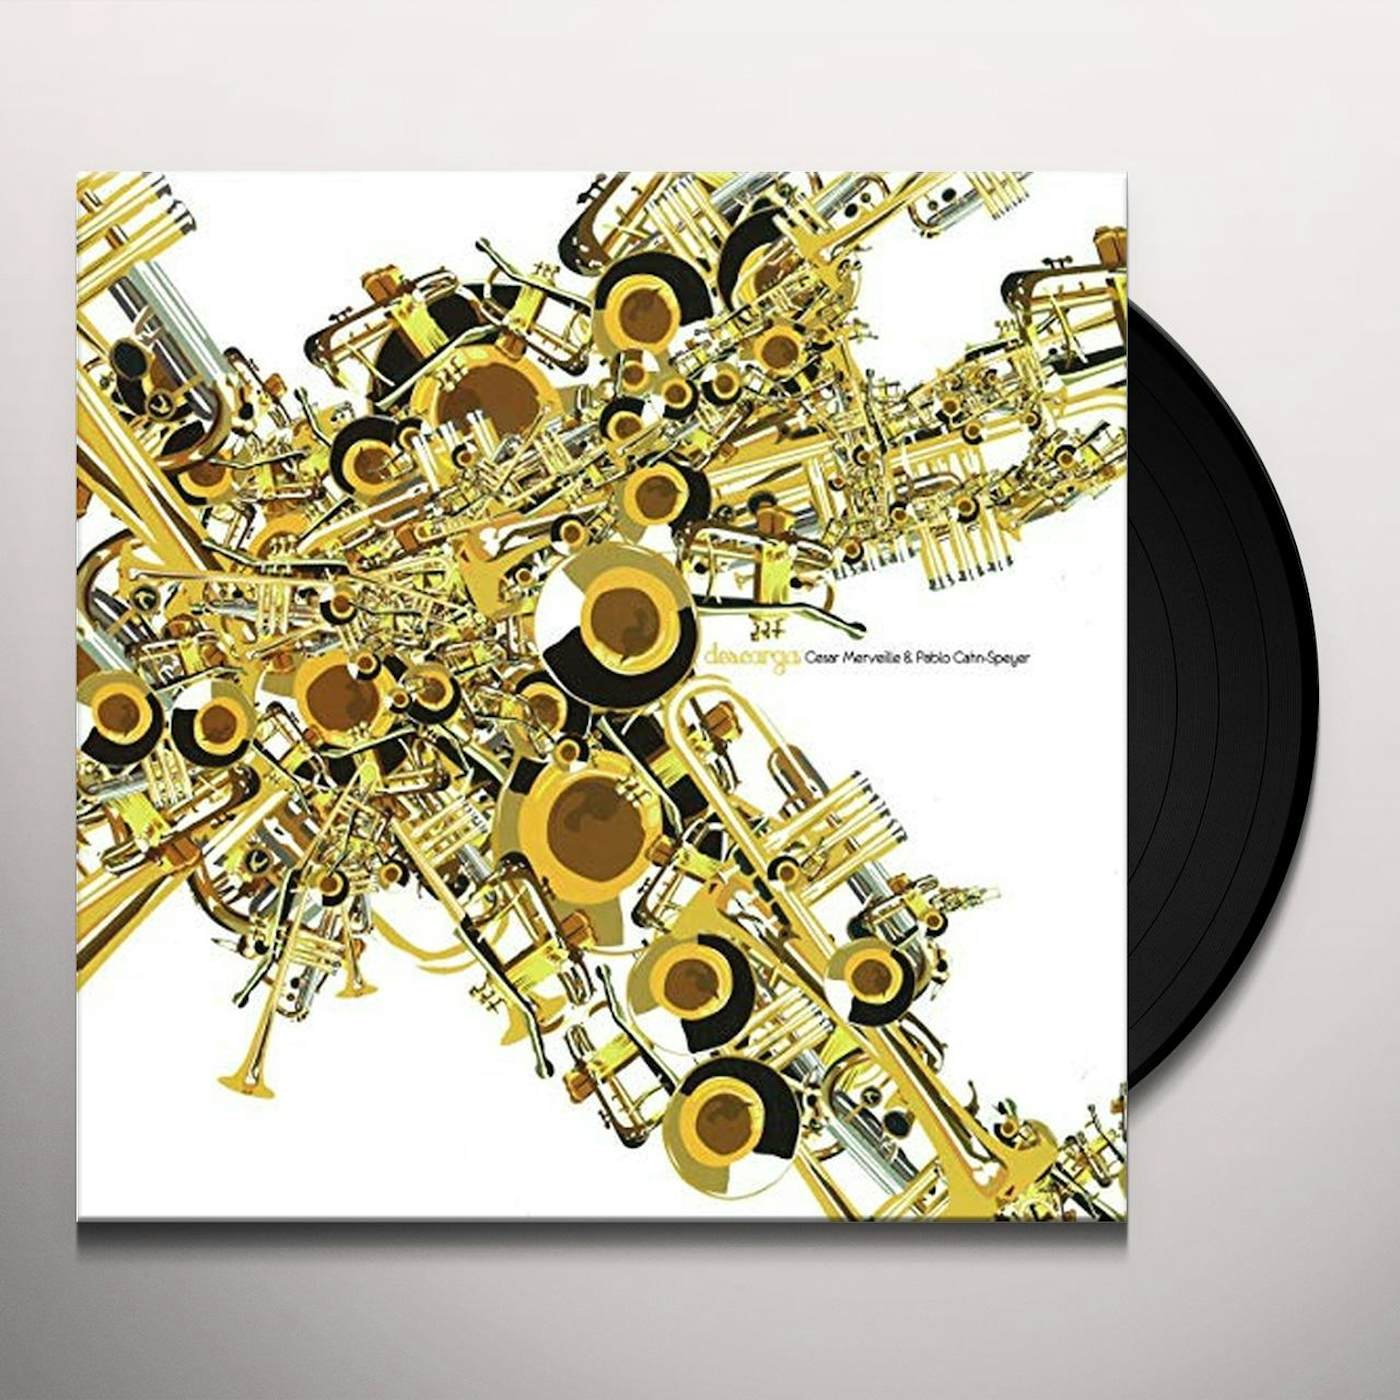 Cesar Merveille / Pablo Cahn-Speyer Descarga Vinyl Record